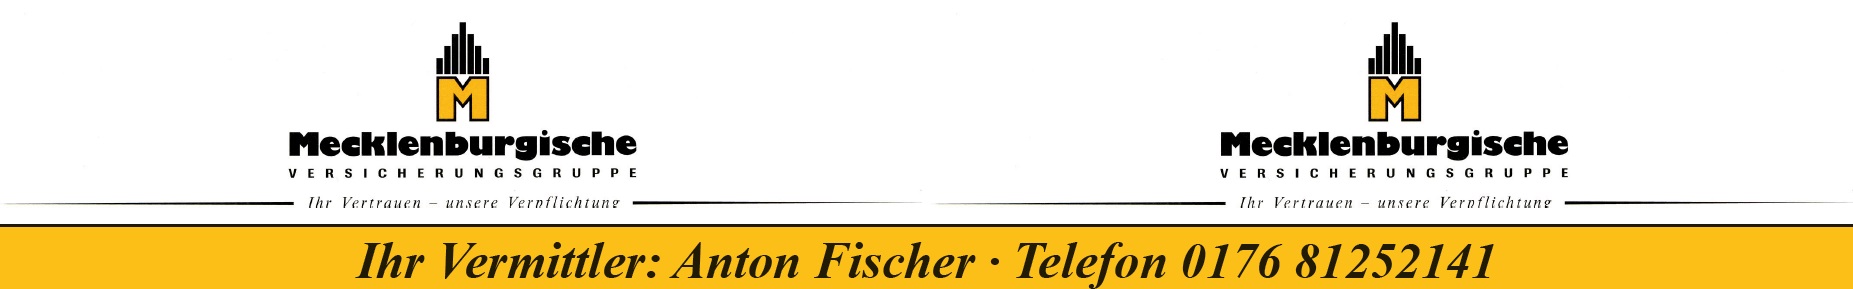 BFM Tischaufkleber Mecklenburgische